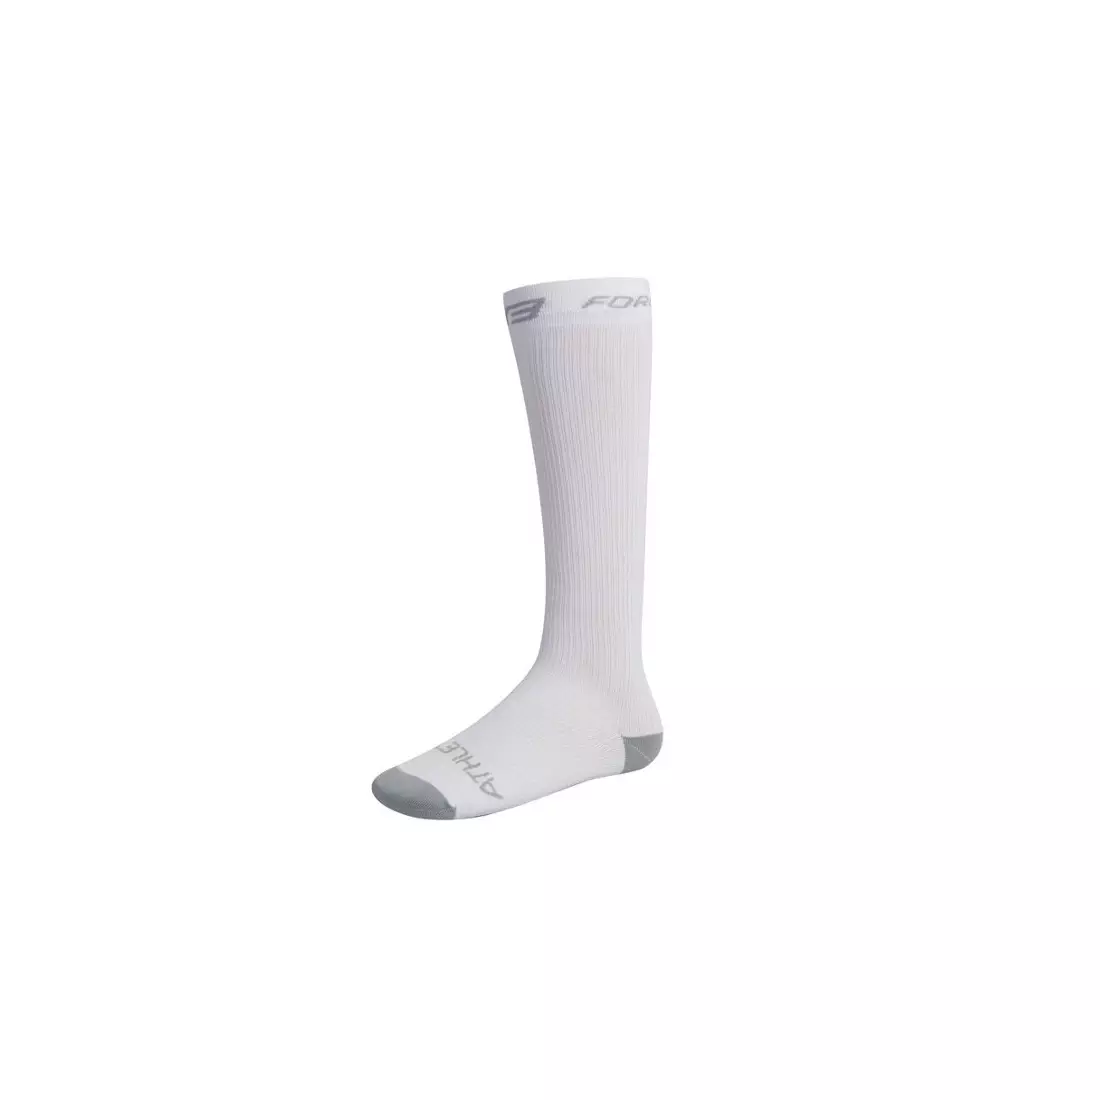 FORCE kompresní ponožky 90103, barva: bílá